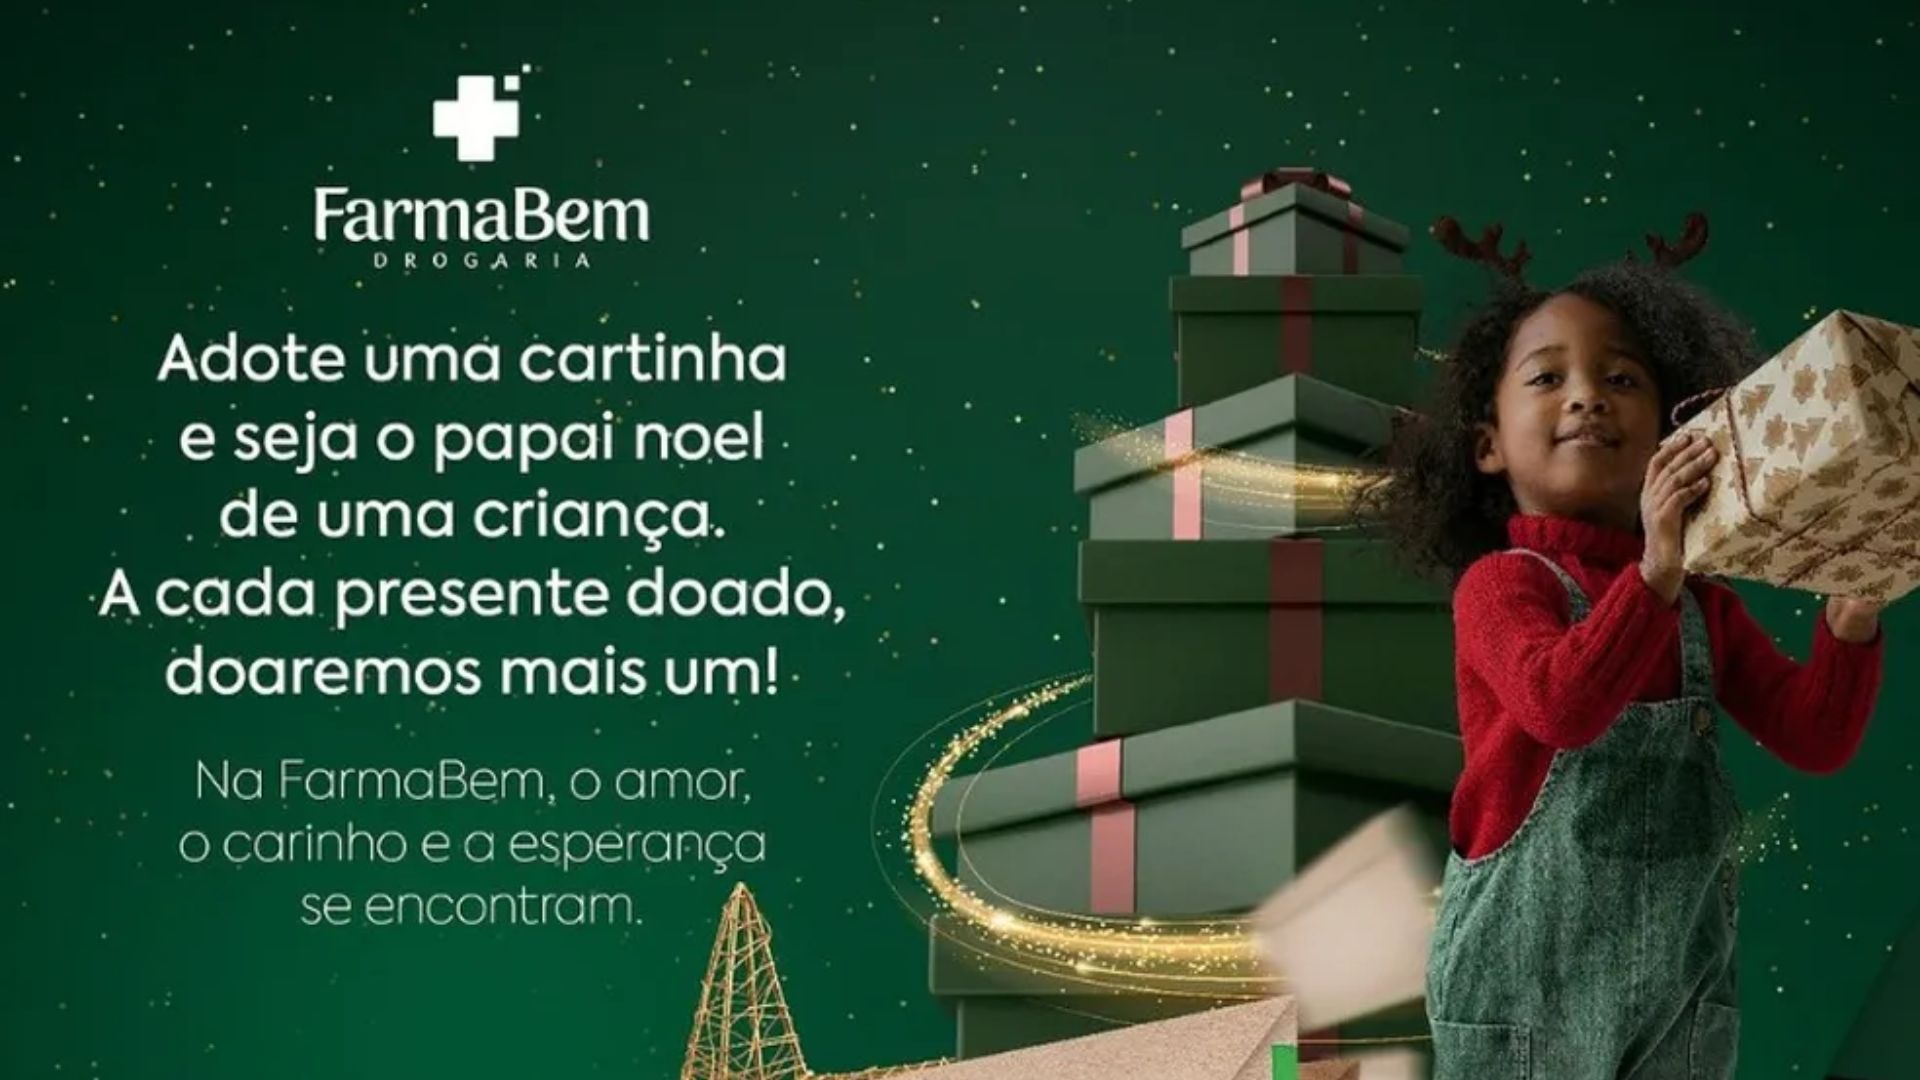 Farmabem viabiliza doações de fim de ano - Foto: Divulgação